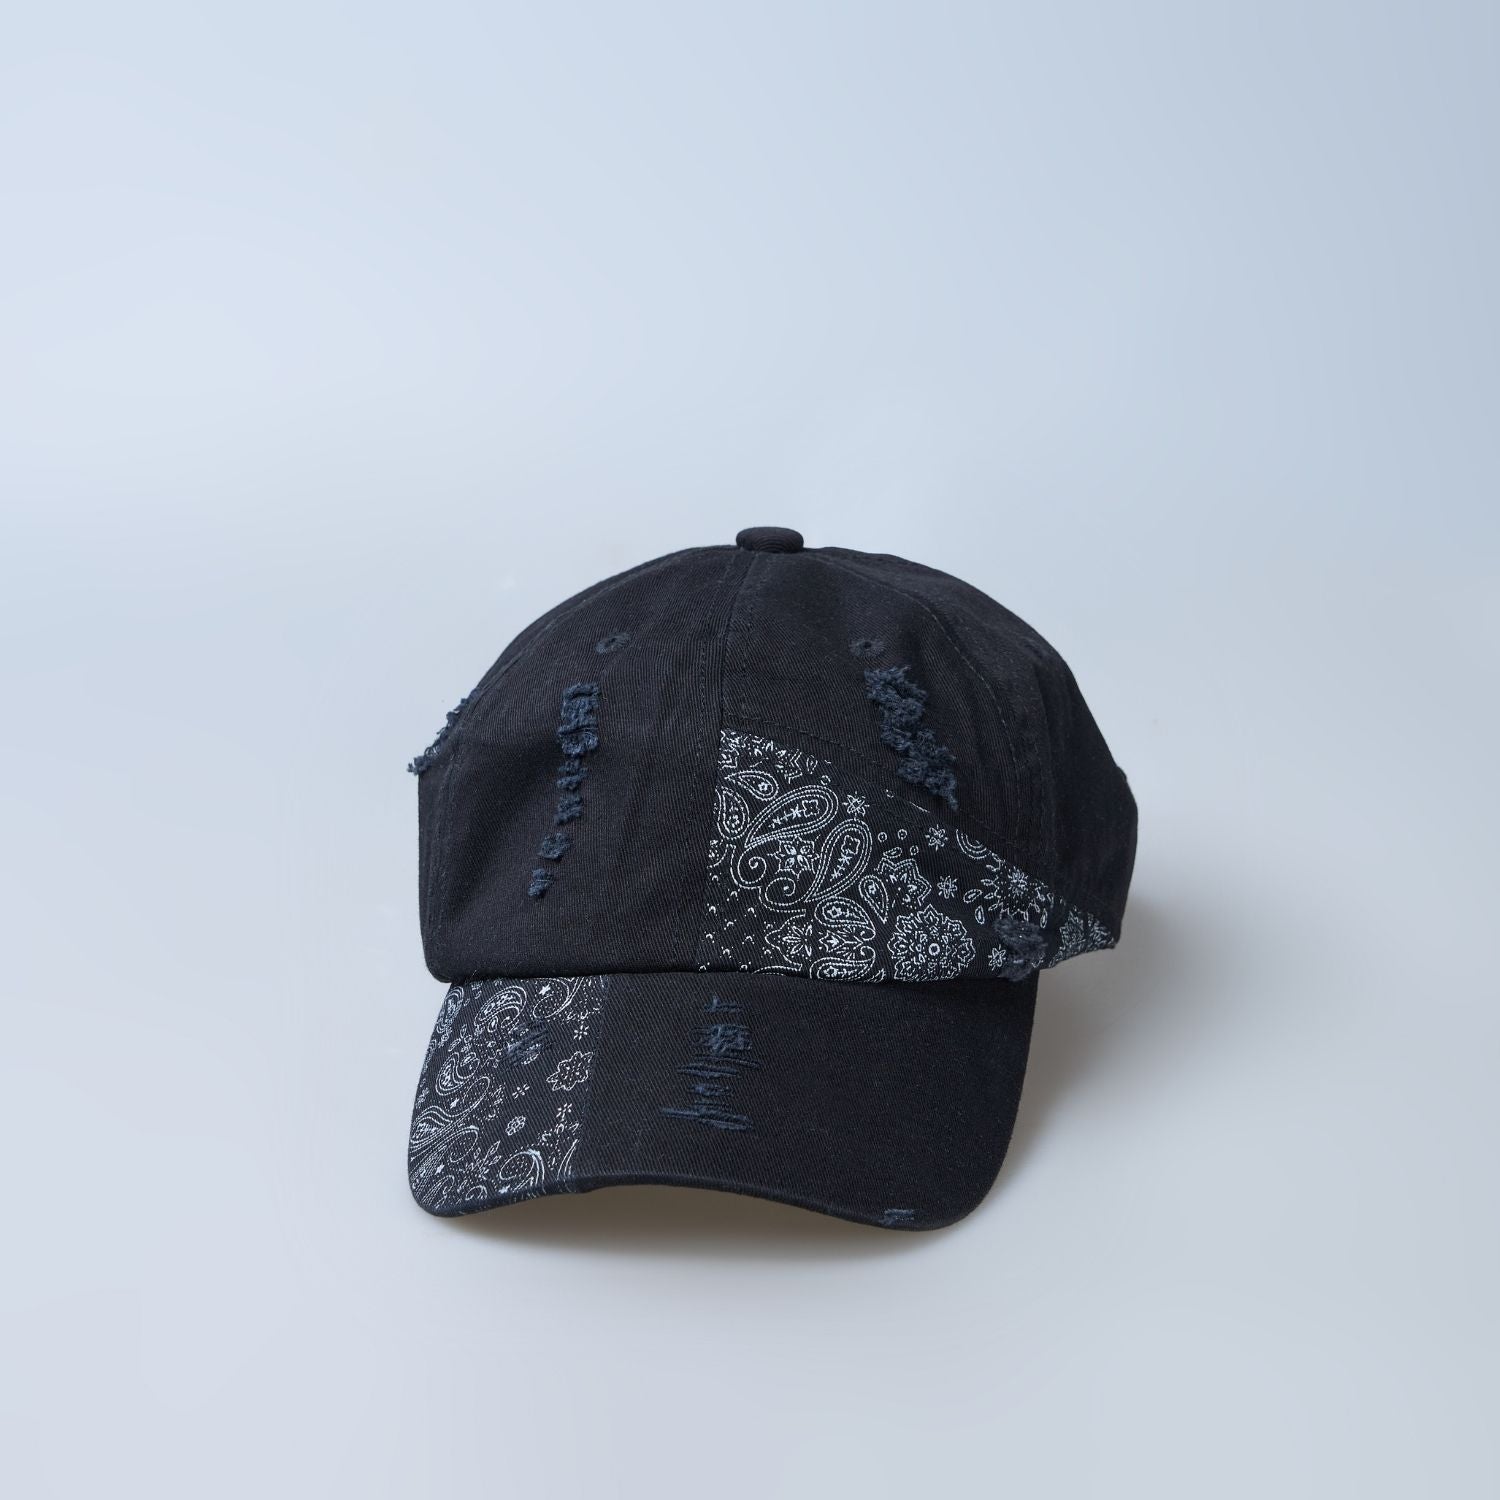 Black colored design patterned cap for men, design detail.